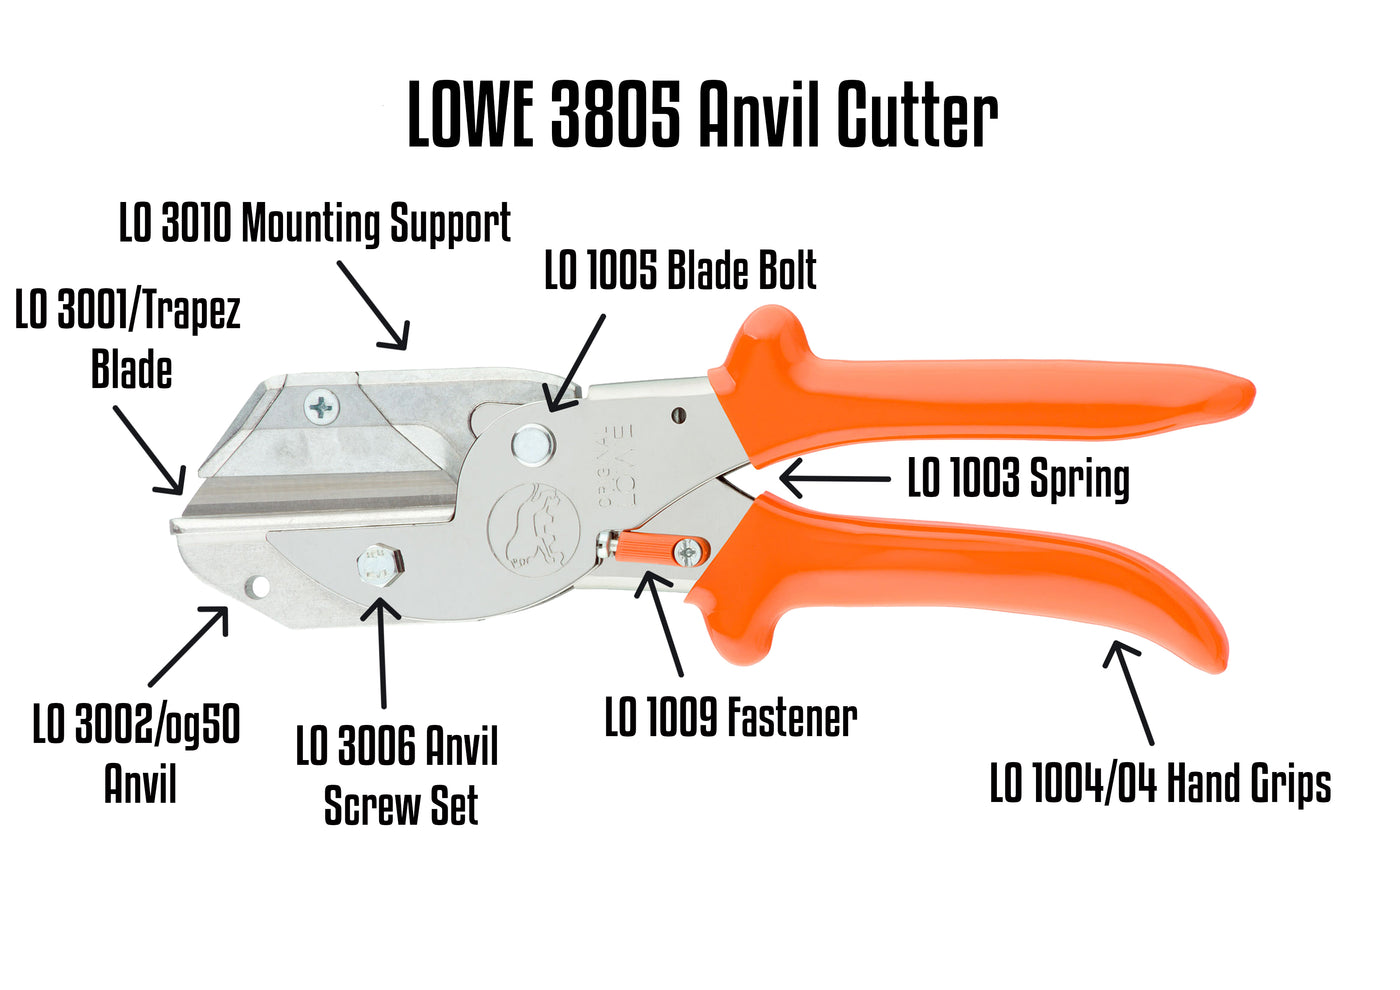 LO 3805 Anvil Cutter